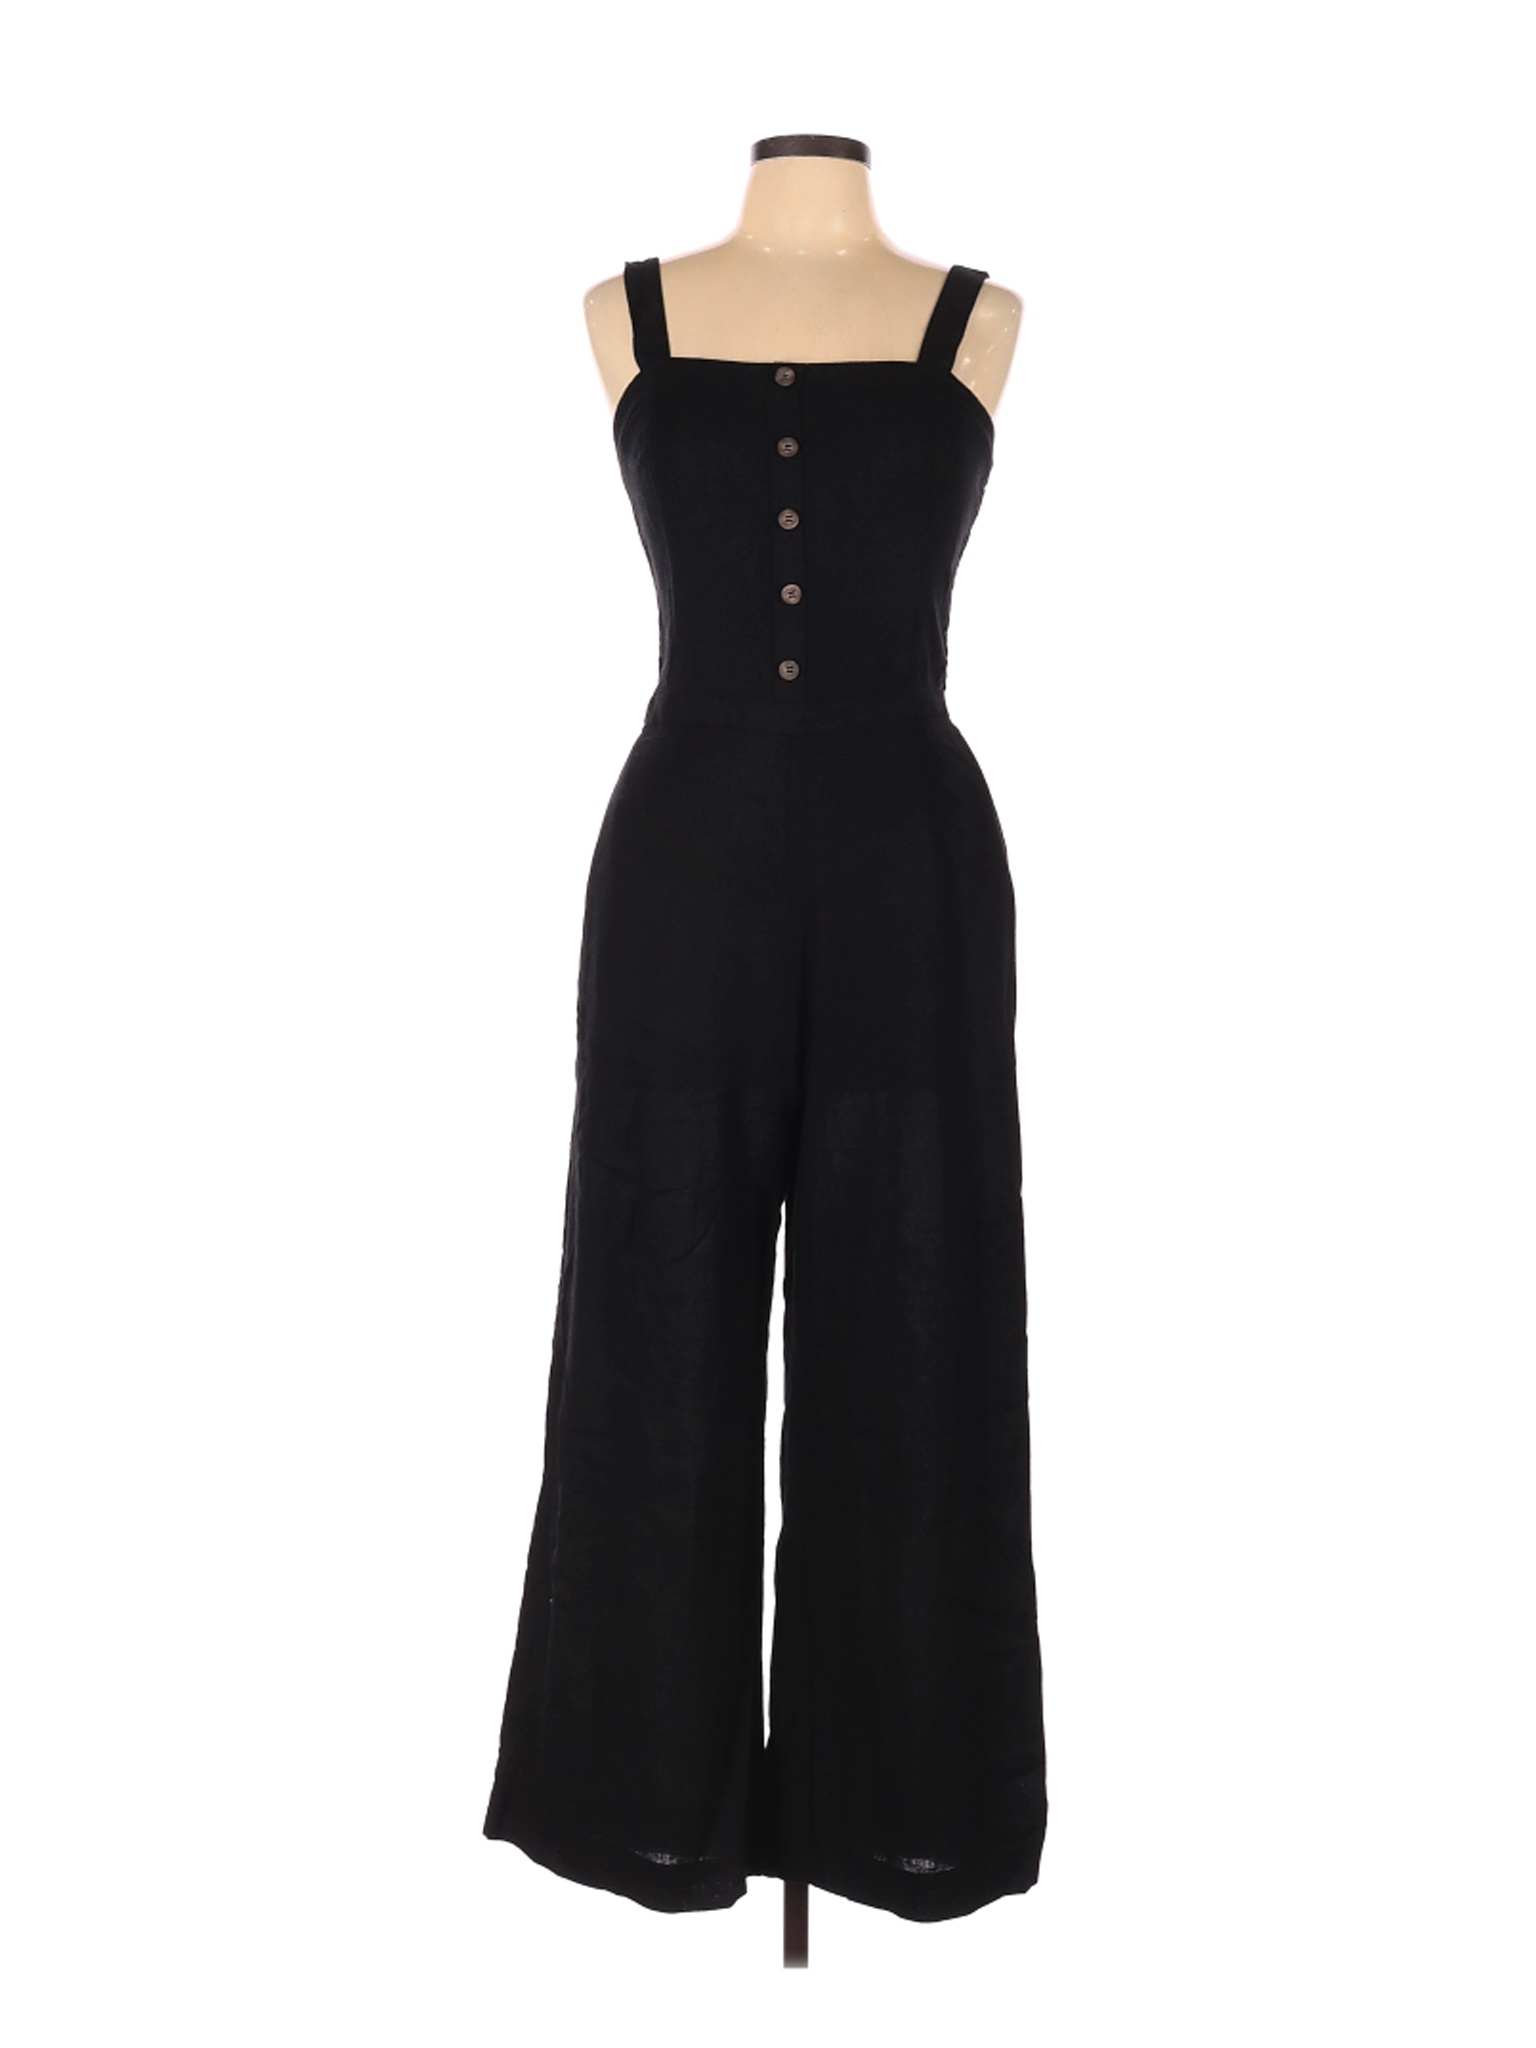 Zara Women Black Jumpsuit L | eBay